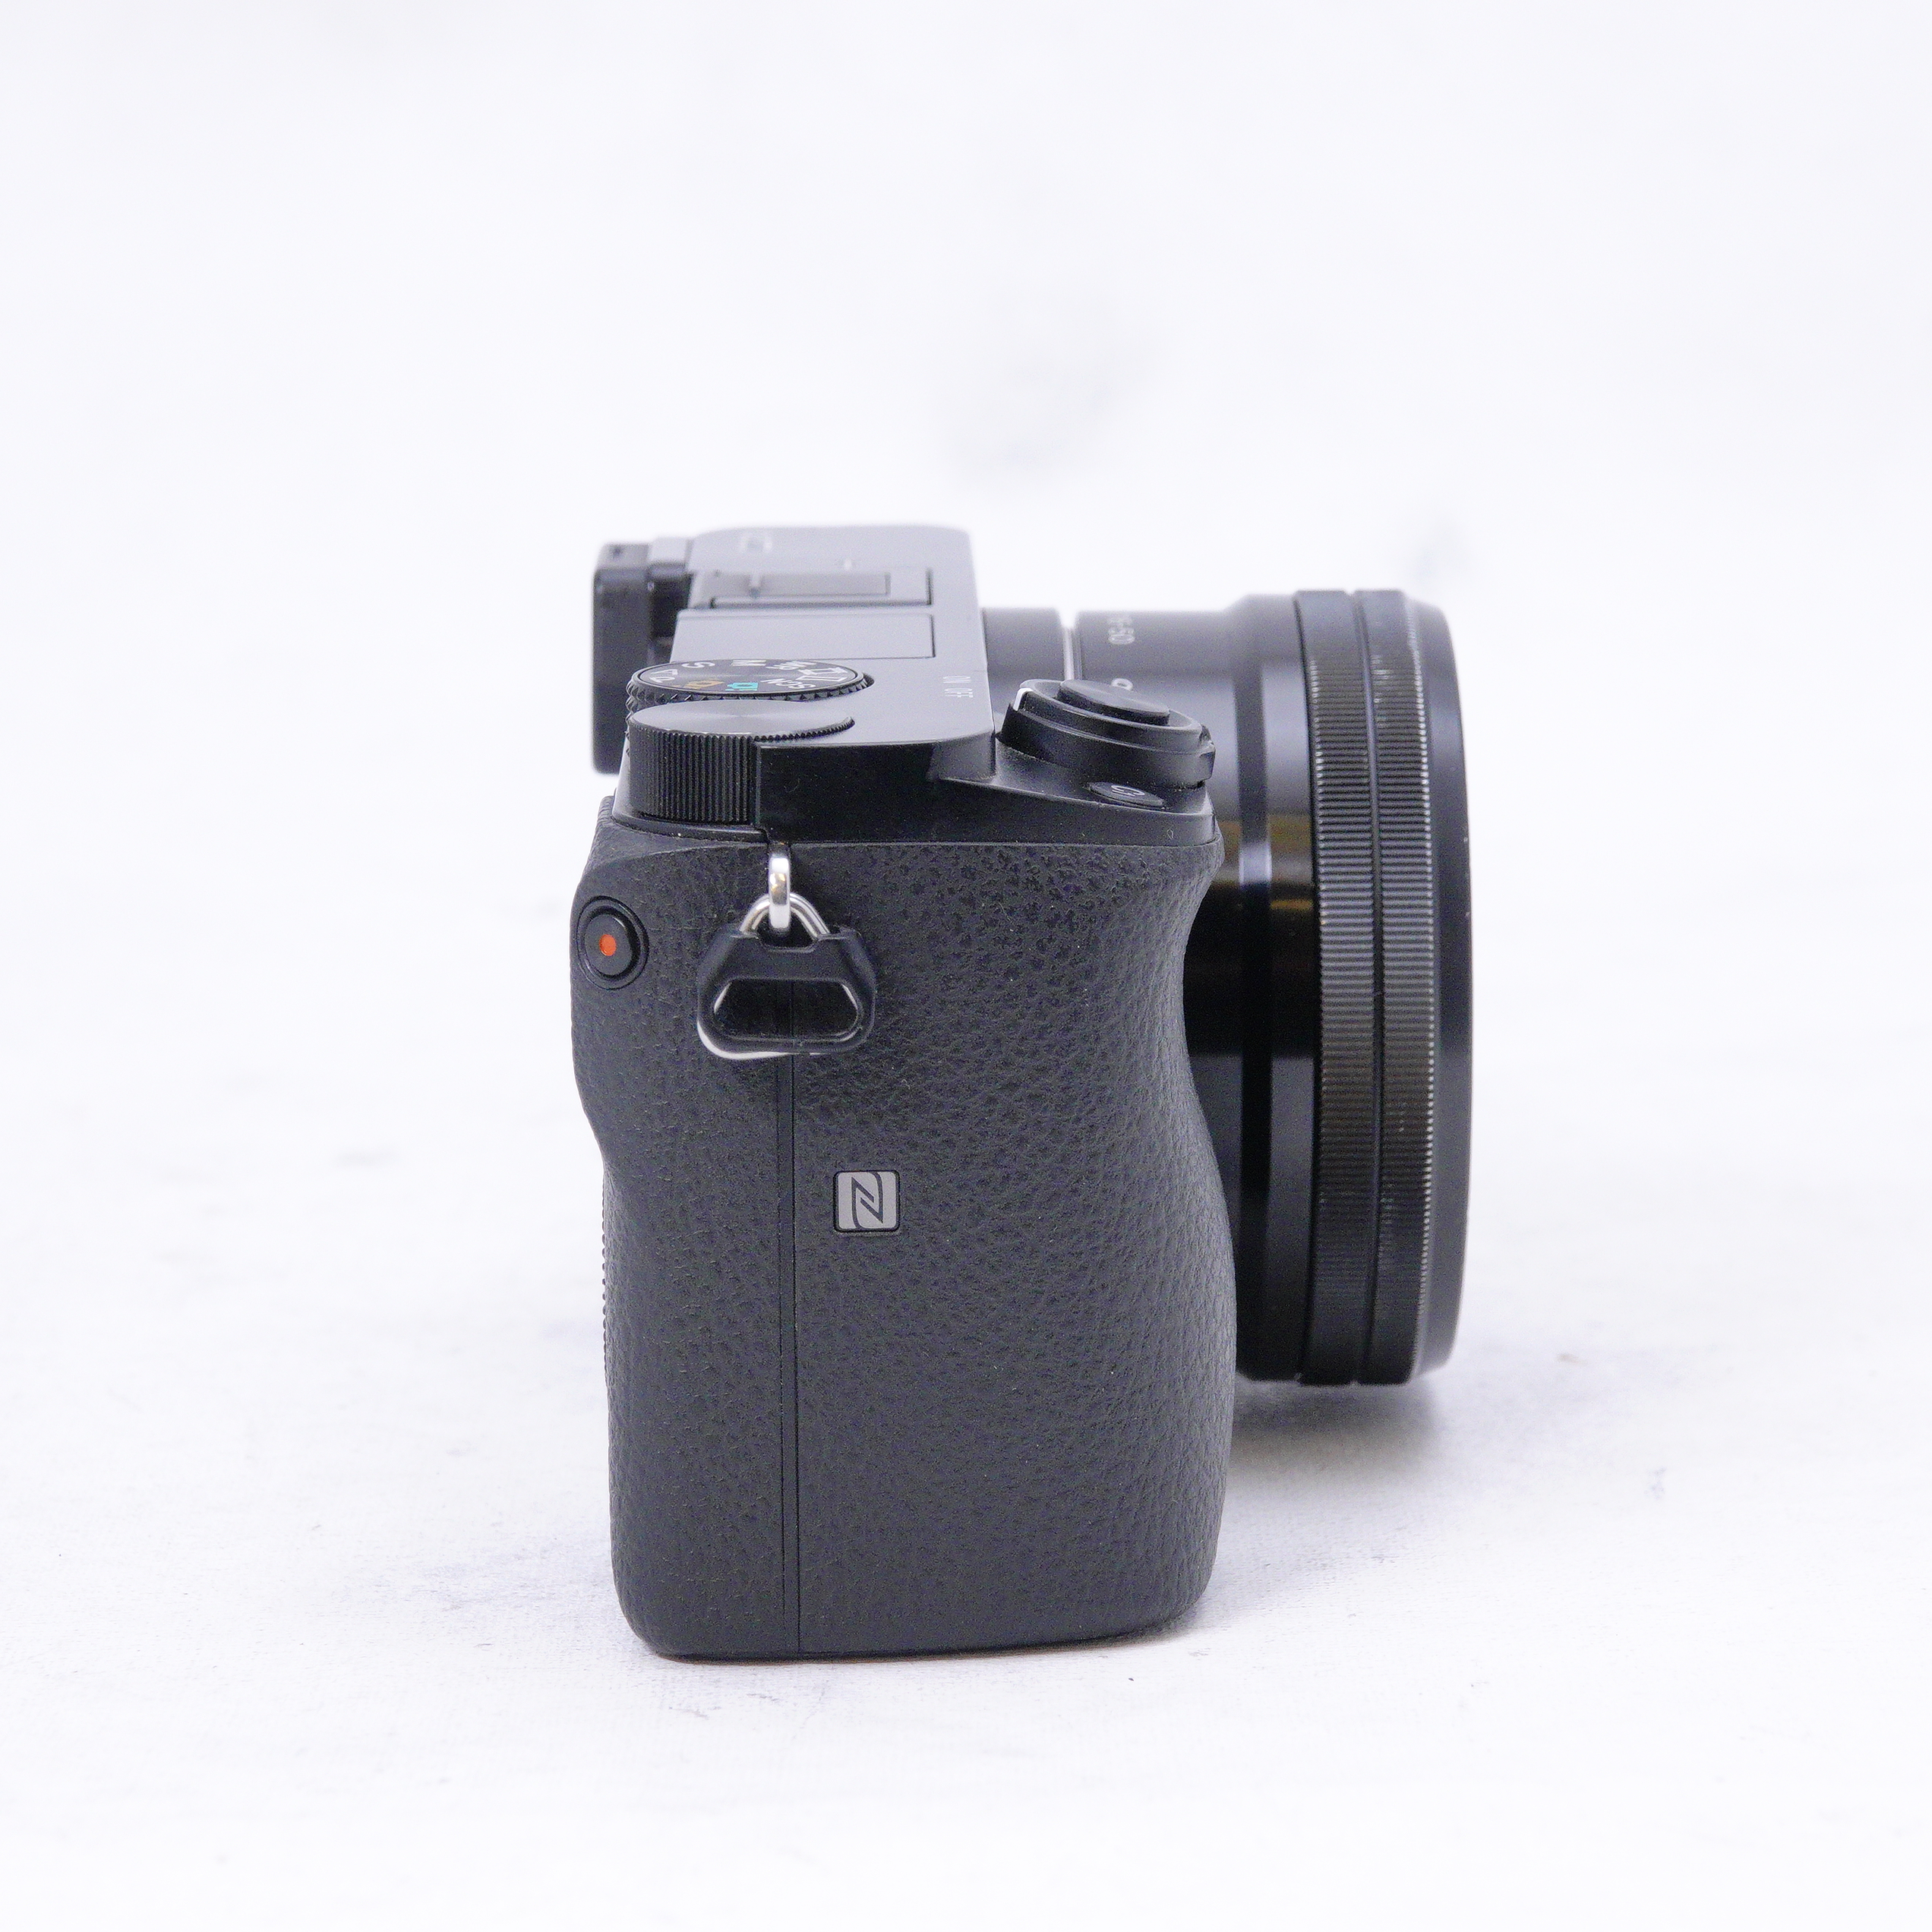 Sony a6000 con lente 16-50mm kit - Usado